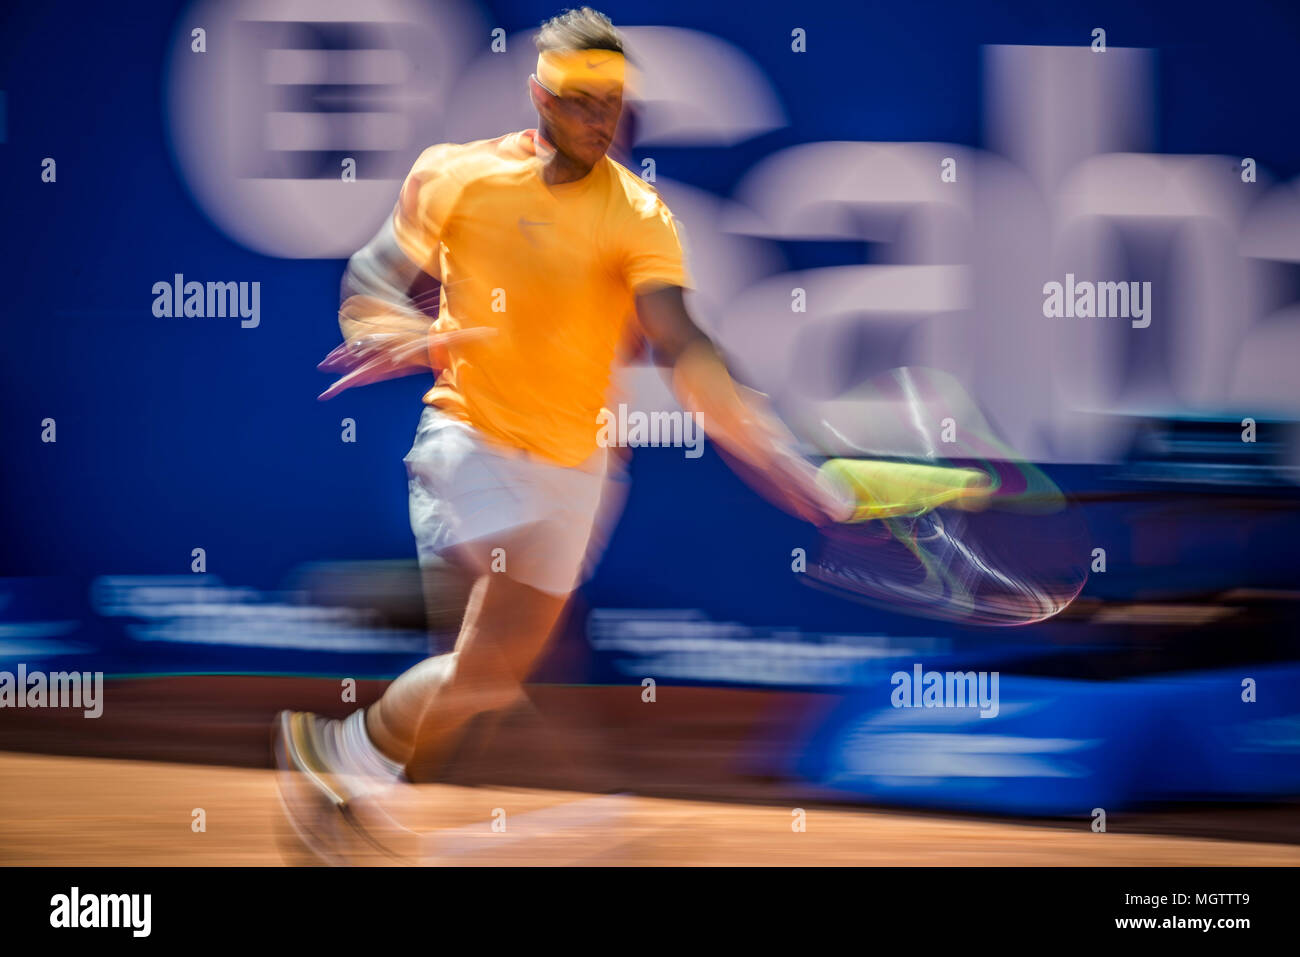 Barcelone, Espagne. 29 avril, 2018 : RAFAEL NADAL (ESP) renvoie la balle à Stefanos Tsitsipas (GRE) dans la finale de l'Open de Barcelone Banc Sabadell' 2018. Nadal a gagné 6:2, 6:1 Banque D'Images